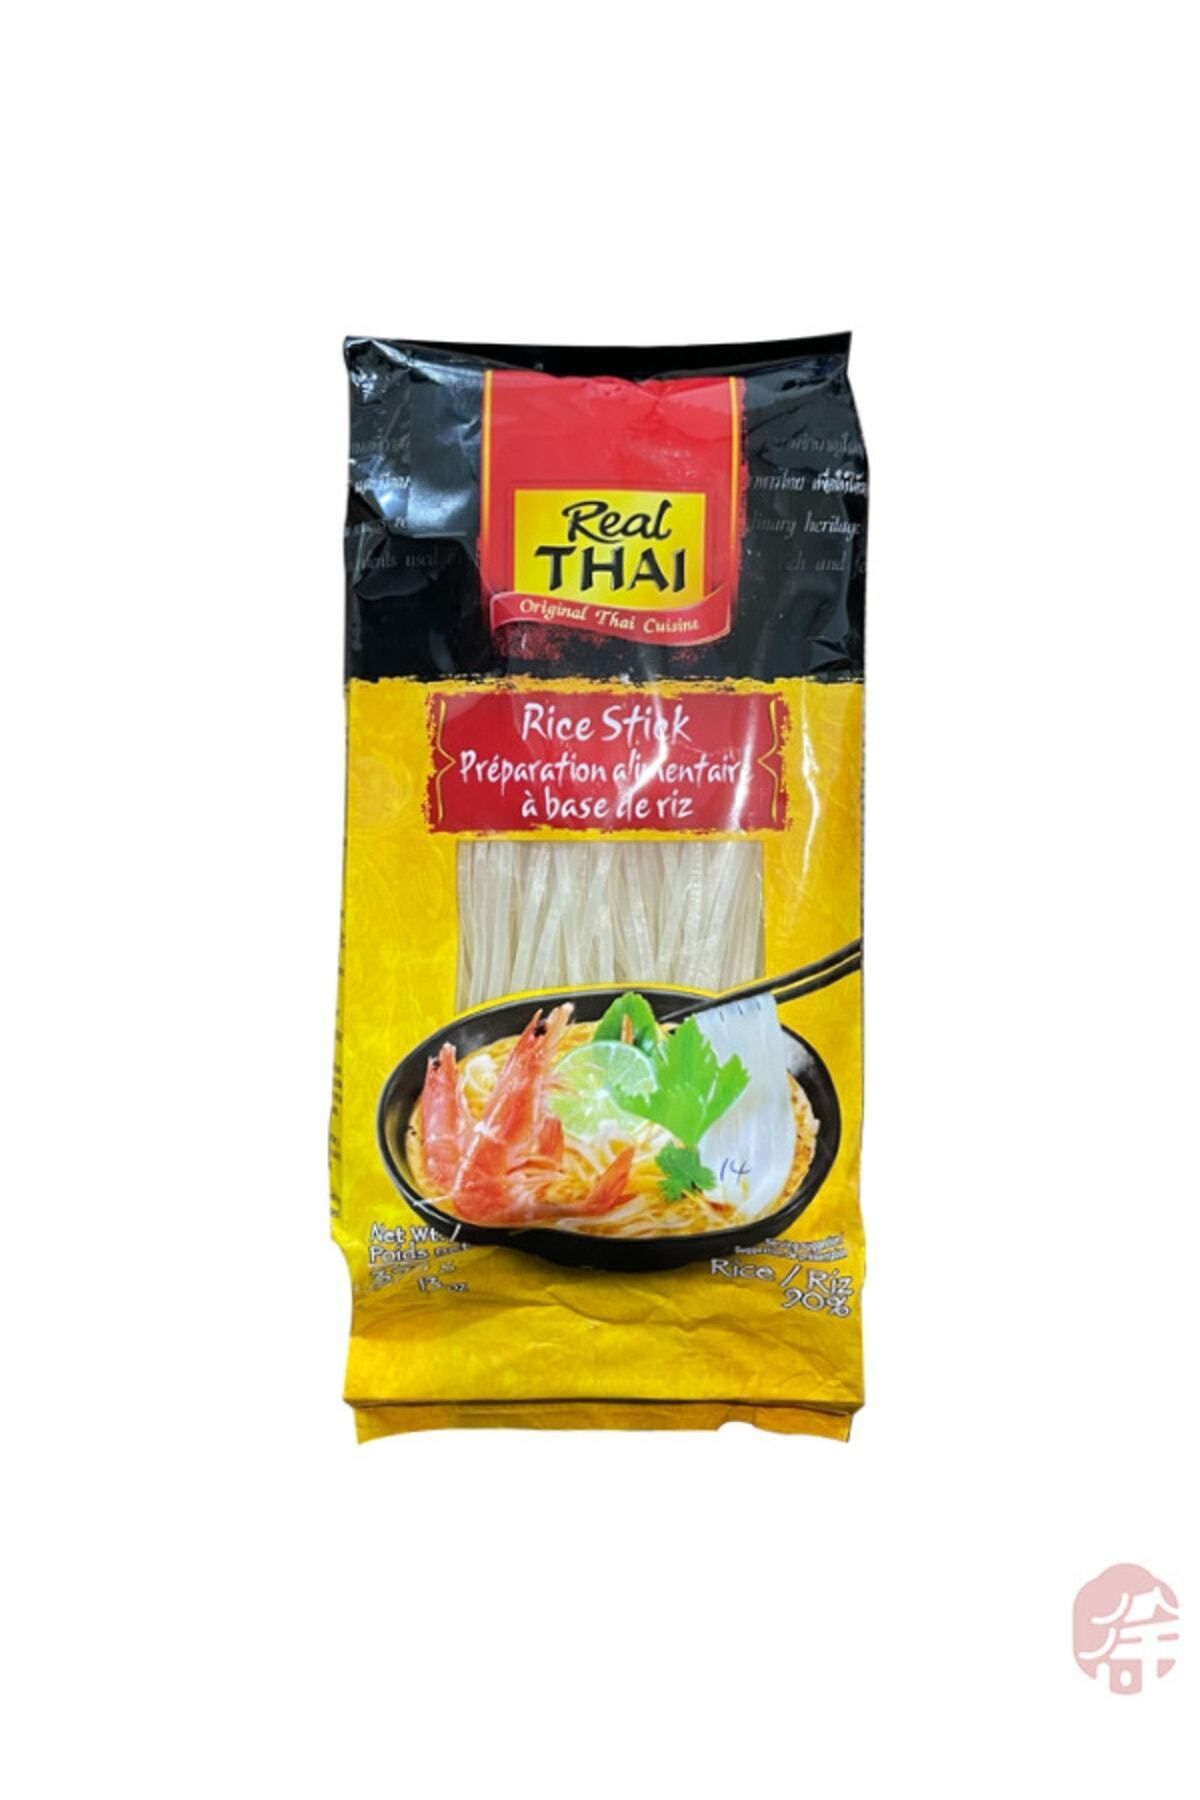 Real Thai Pirinç Çubukları 3mm ( 3mm Thai Rice Stick) - 375g